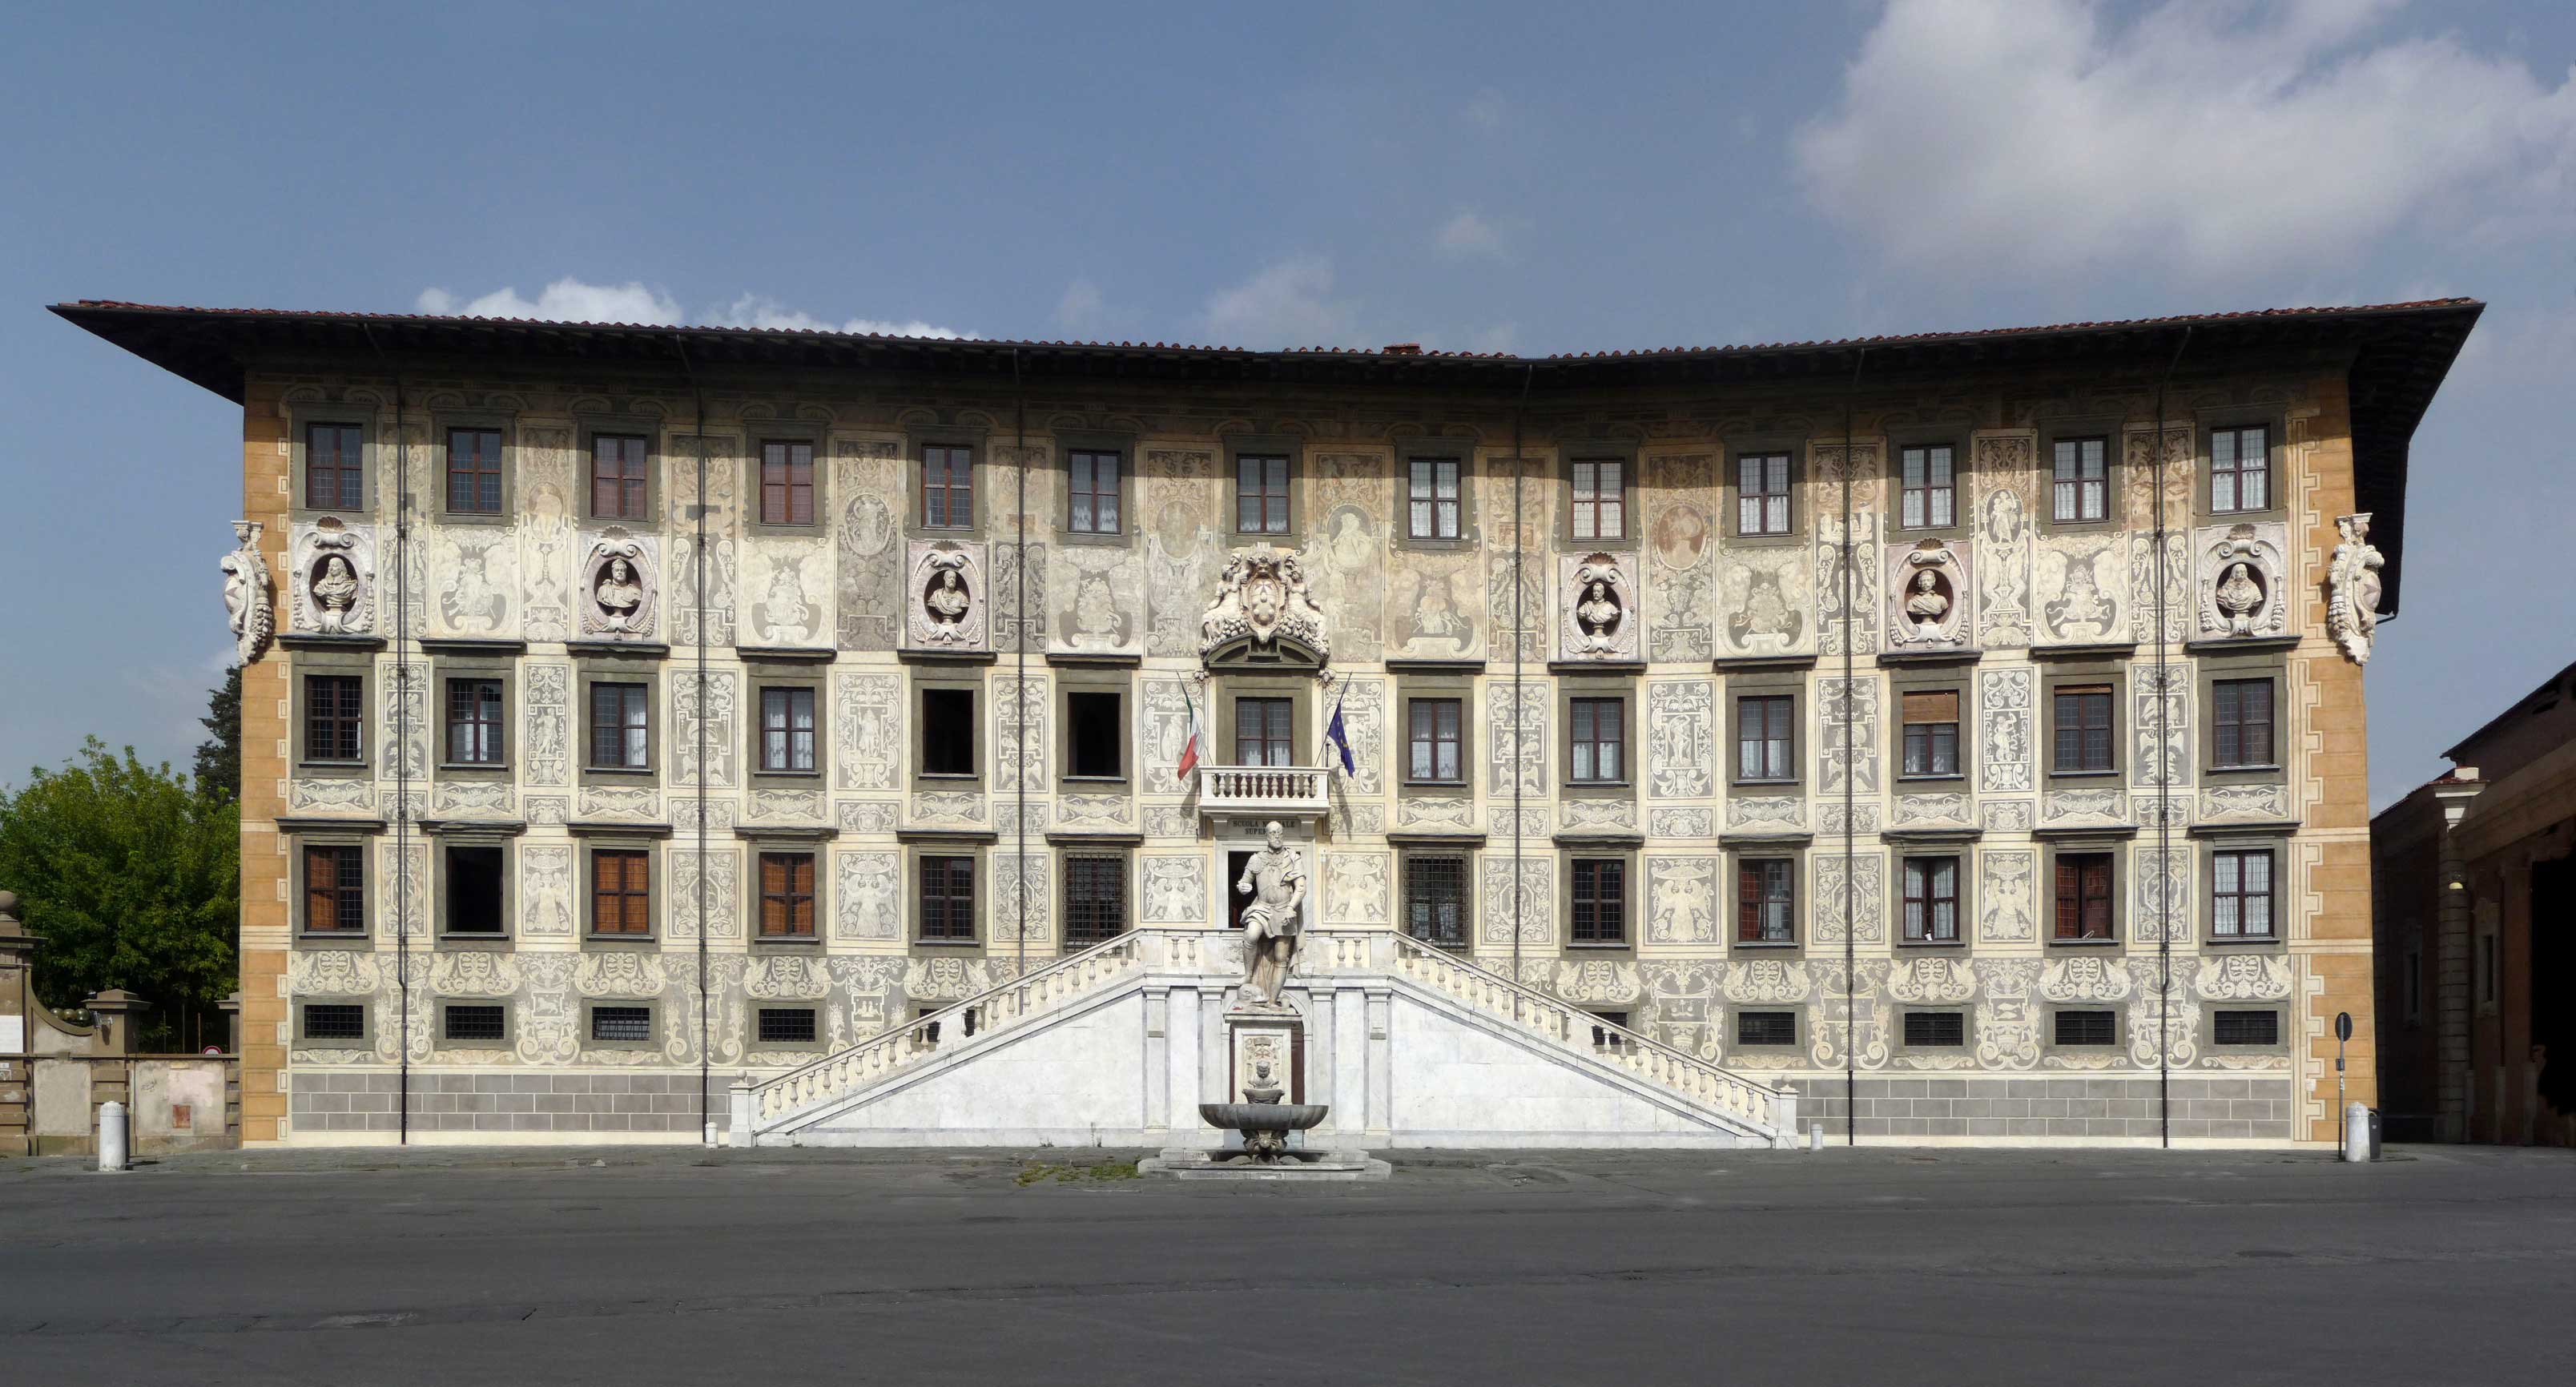  اپلای پلاس - دانشگاه Scuola Normale Superiore di Pisa